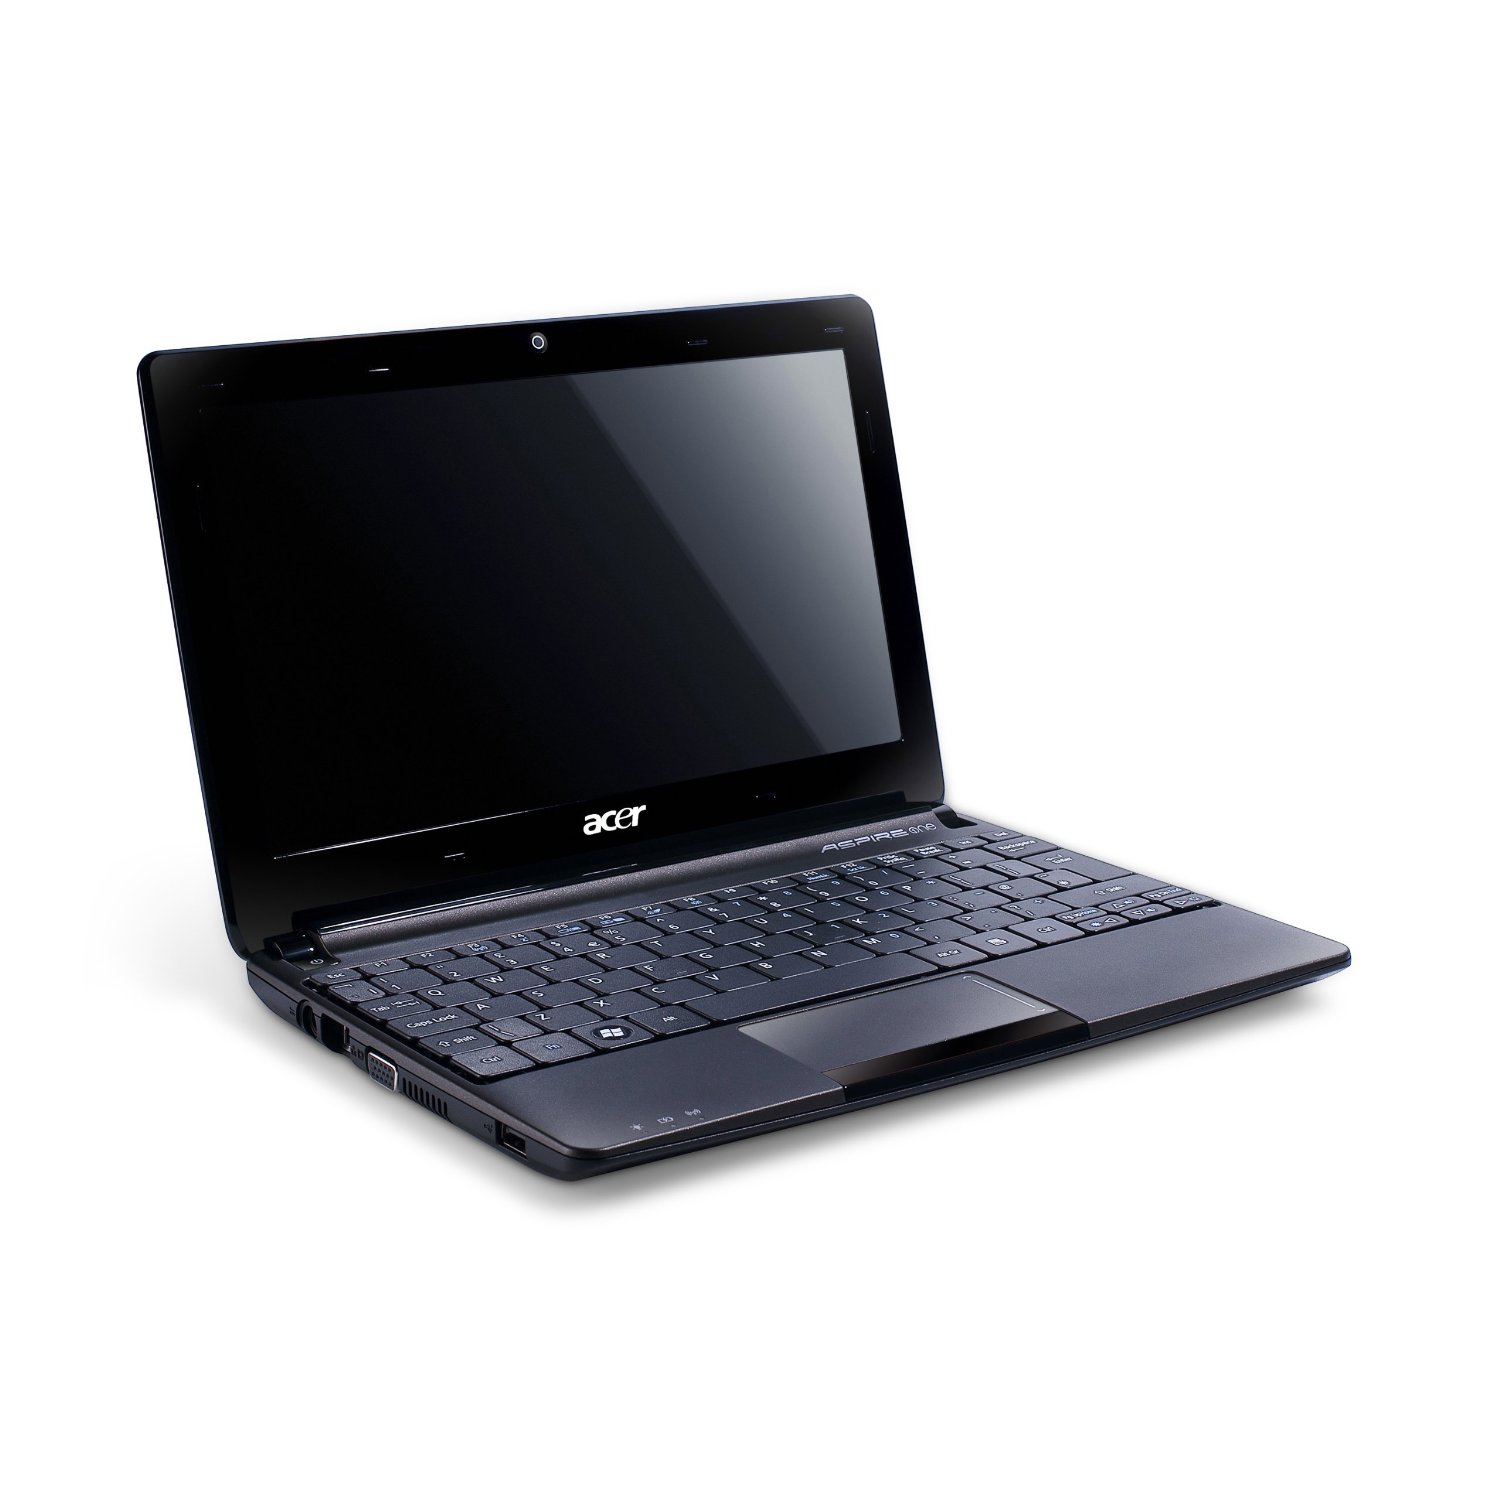 Acer Aspire One 722-0828 - Notebookcheck.net External Reviews